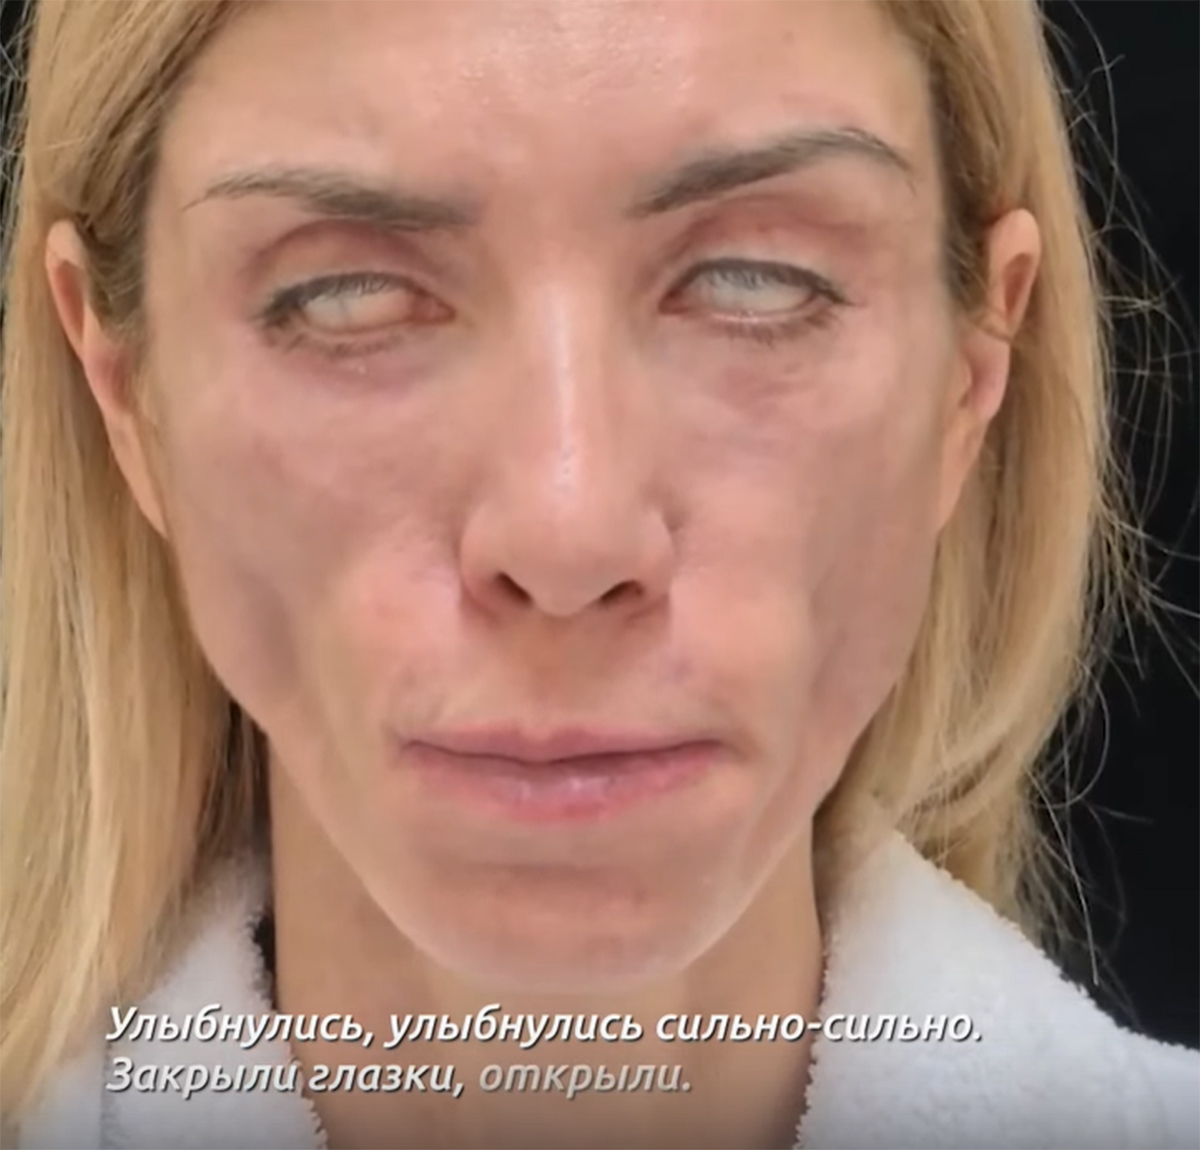 Жительница Сочи оказалась изуродована после пластической операции ВИДЕО